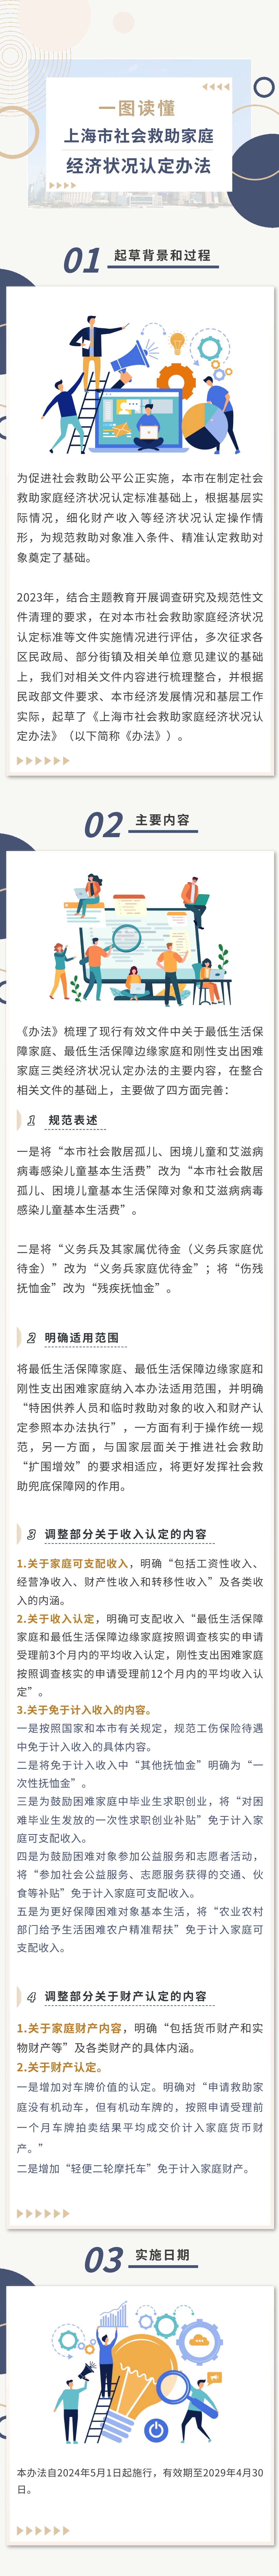 一图读懂《上海市社会救助家庭经济状况认定办法》.jpg